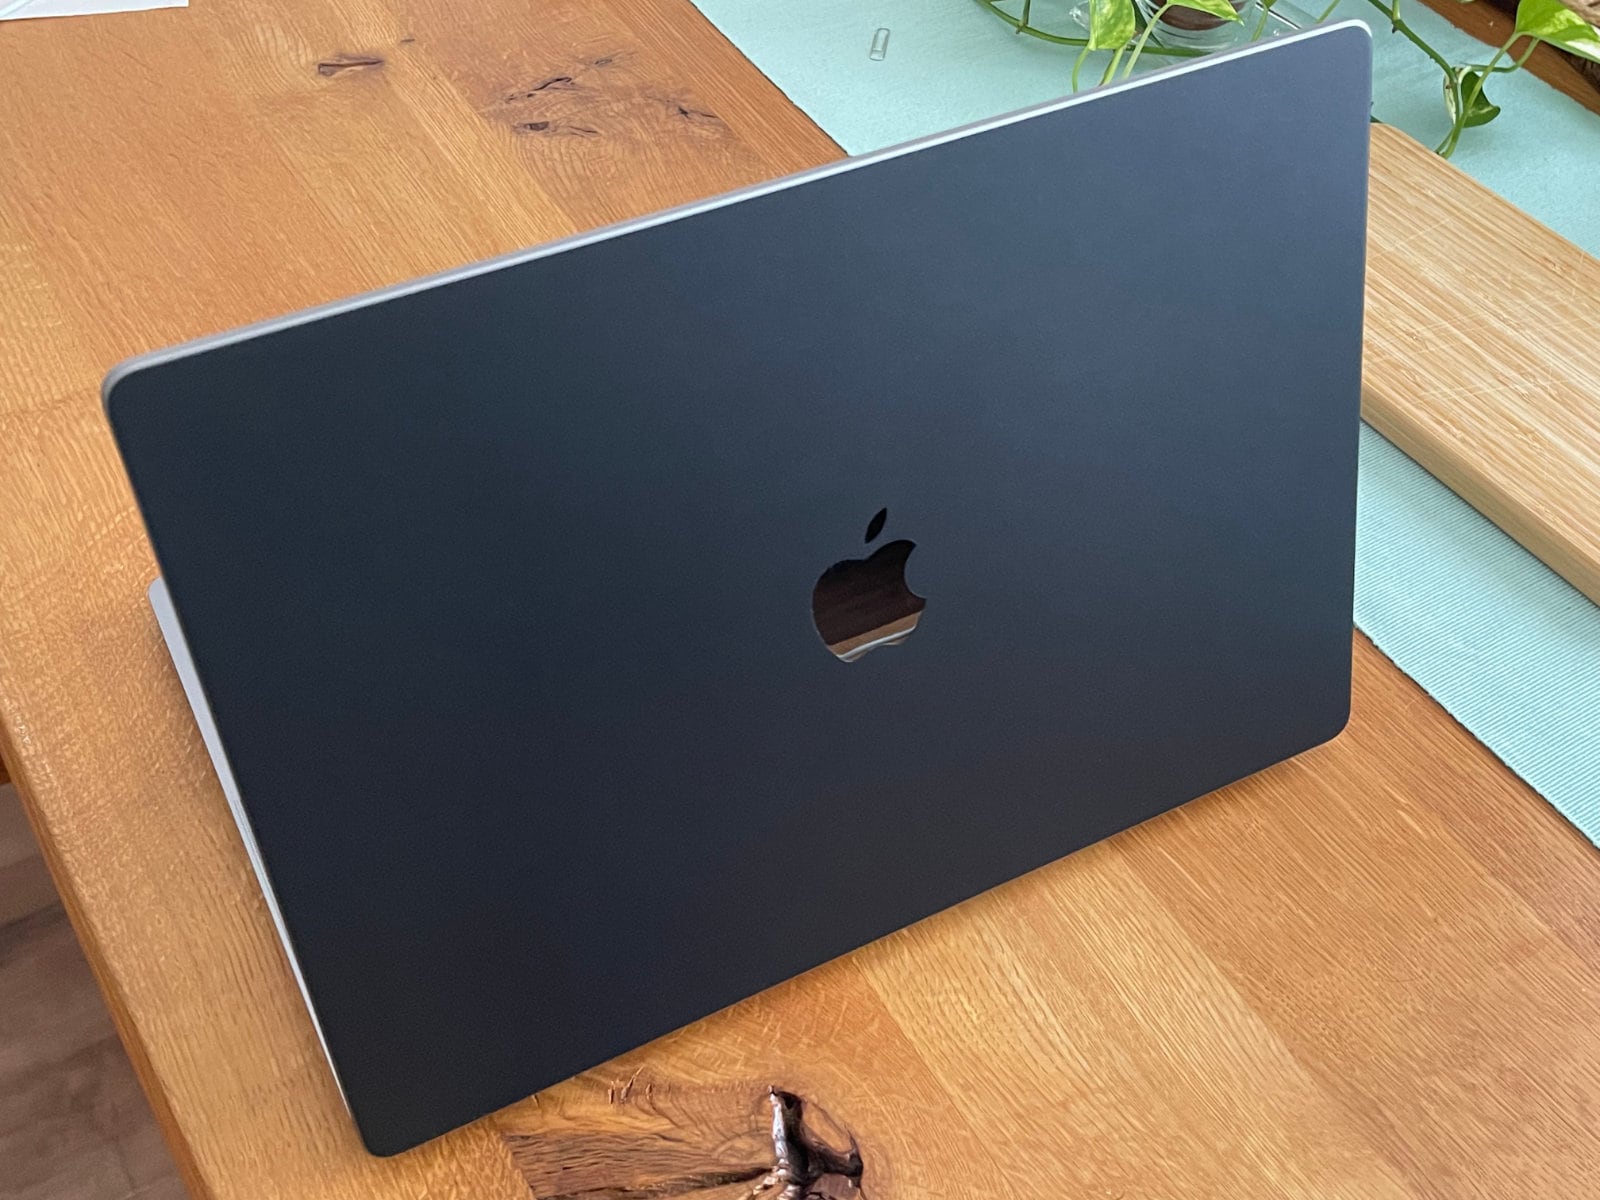 スクリーンを開いた状態のMacBook Pro 16インチをAppleロゴの見える方から撮った写真。マットな黒で覆われた表面だが、Appleロゴ部分には切り抜きが入っているため綺麗に反射している